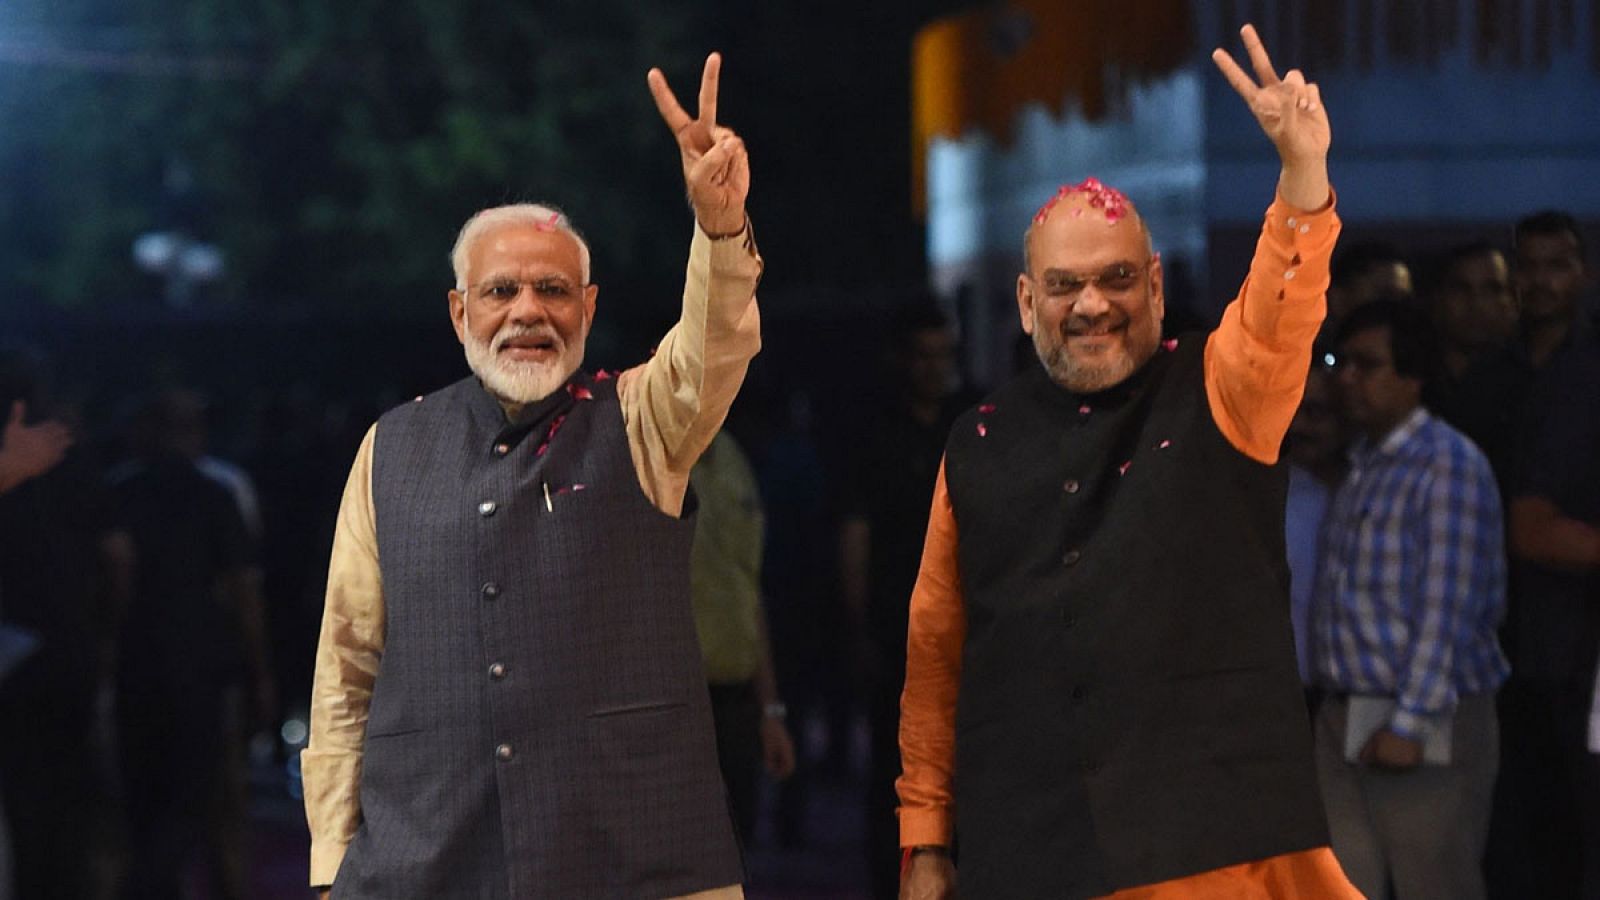 El primer ministro indio Narendra Modi (L) y el presidente del partido Bharatiya Janata (BJP) Amit Shah celebraban la victoria en las elecciones generales